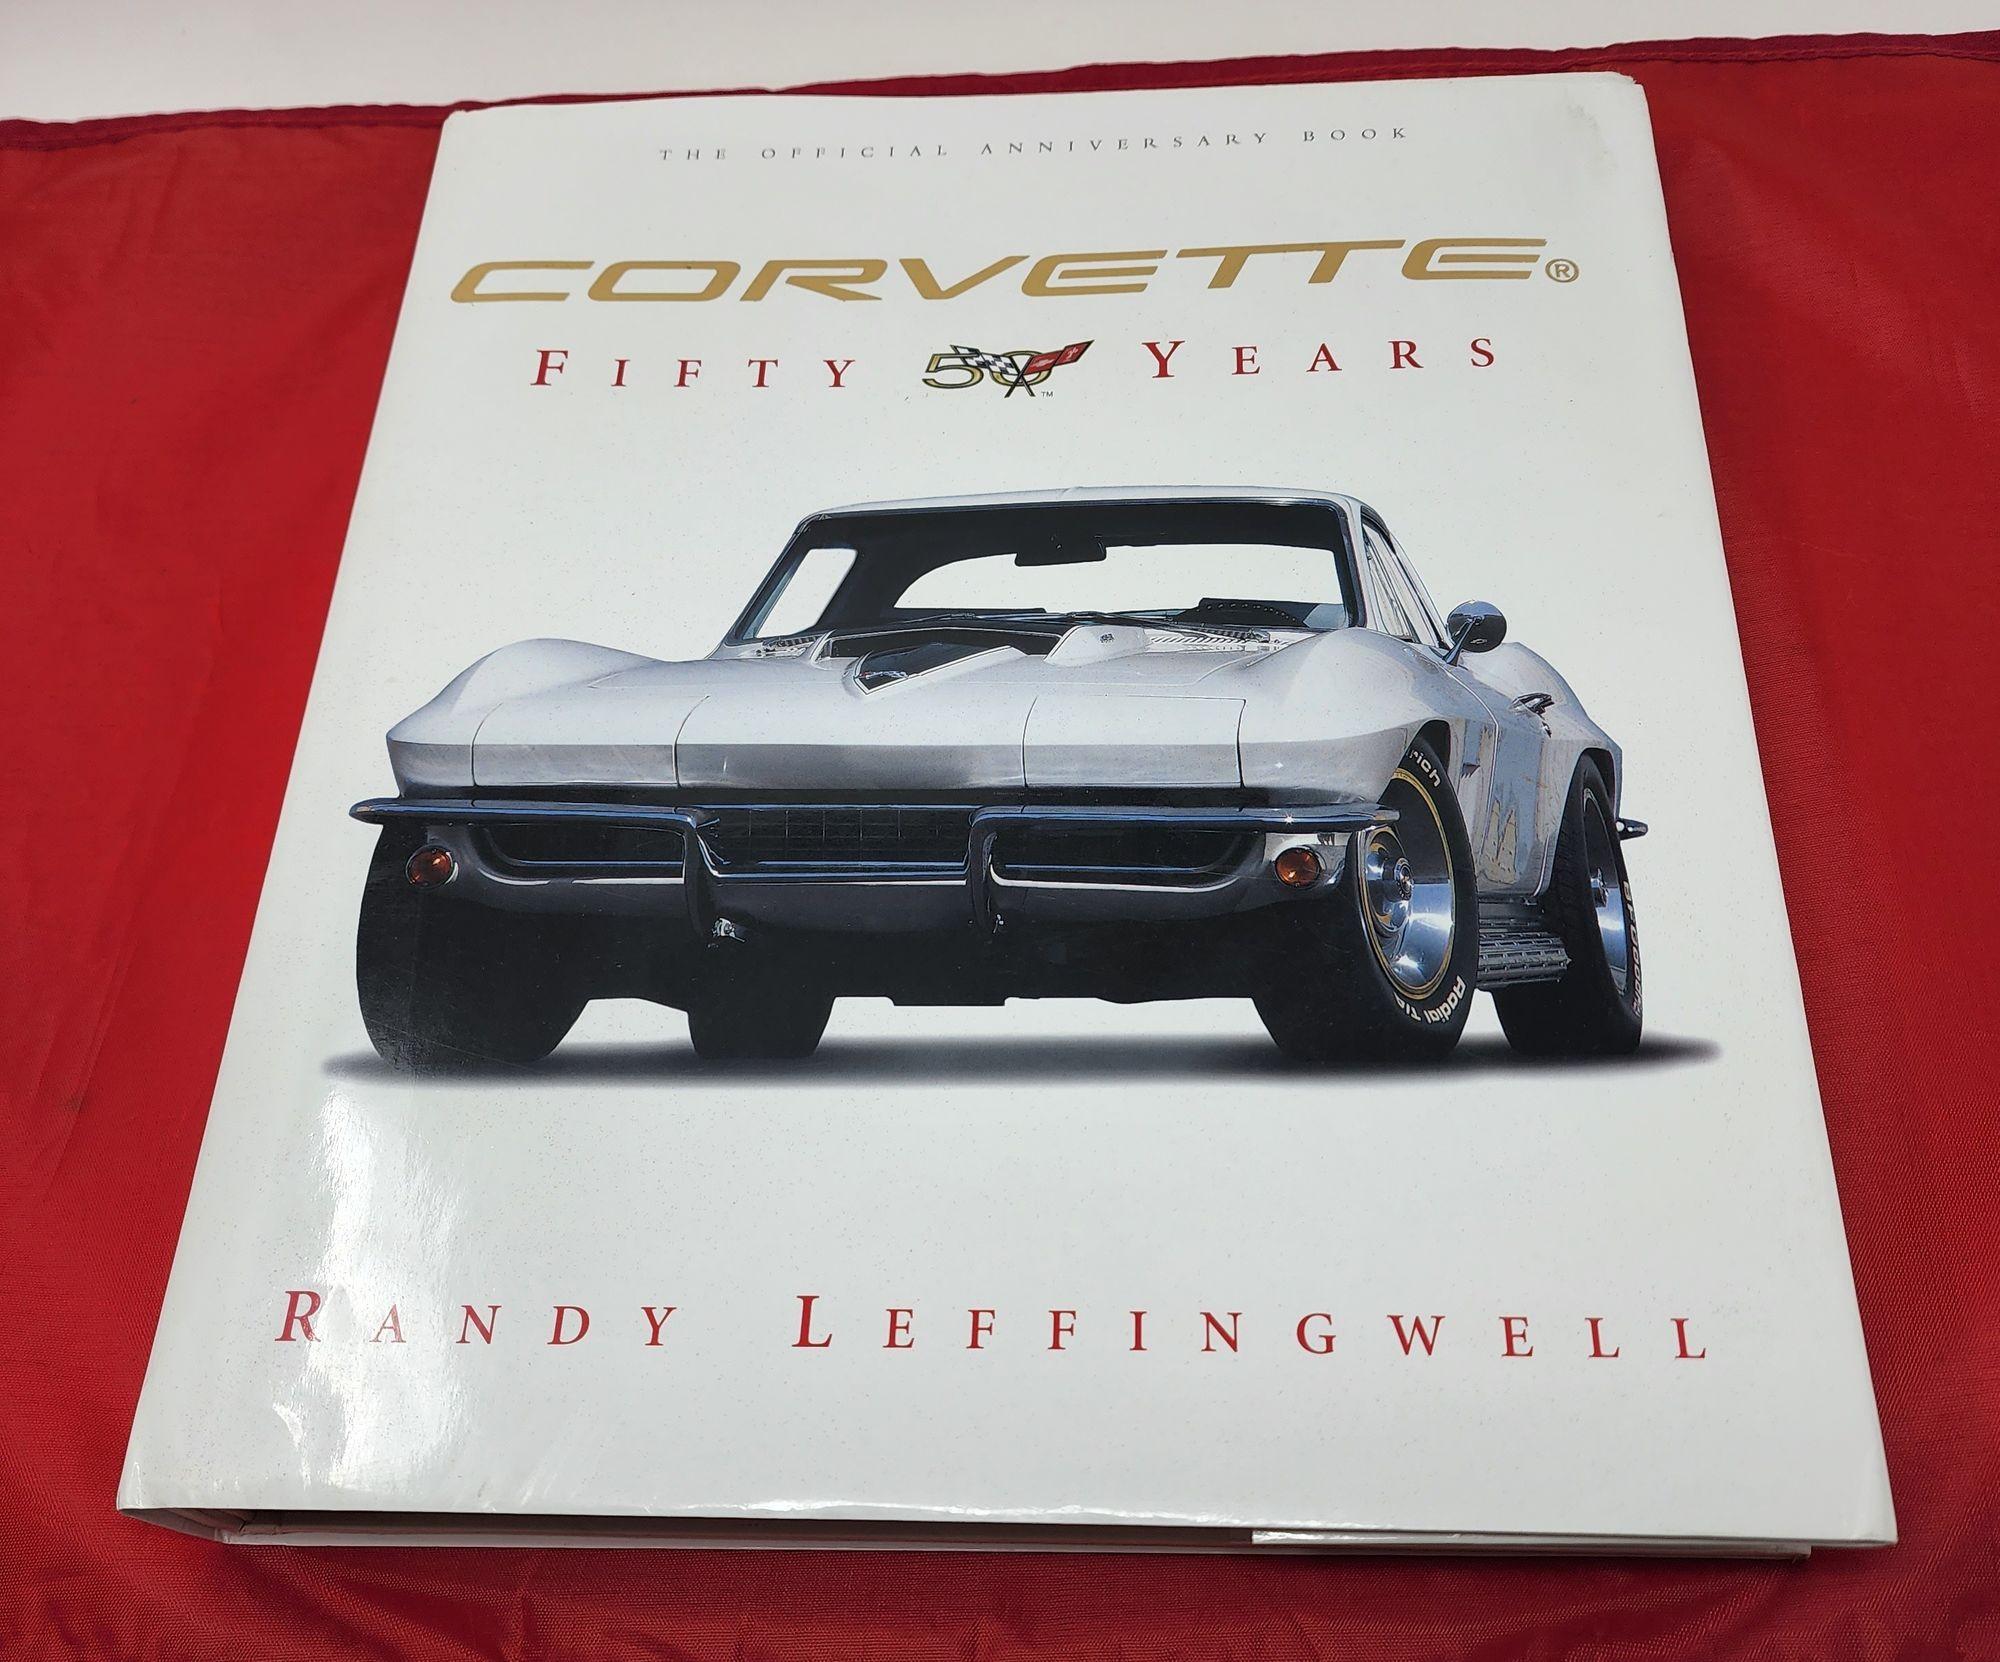 Corvette Fifty Years par Randy Leffingwell.2002, Hardcover, édition révisée. Couvrant 50 années complètes de l'histoire de la Corvette, ce livre présente de superbes photographies en couleur du maître de l'objectif Randy Leffingwell. Sous licence